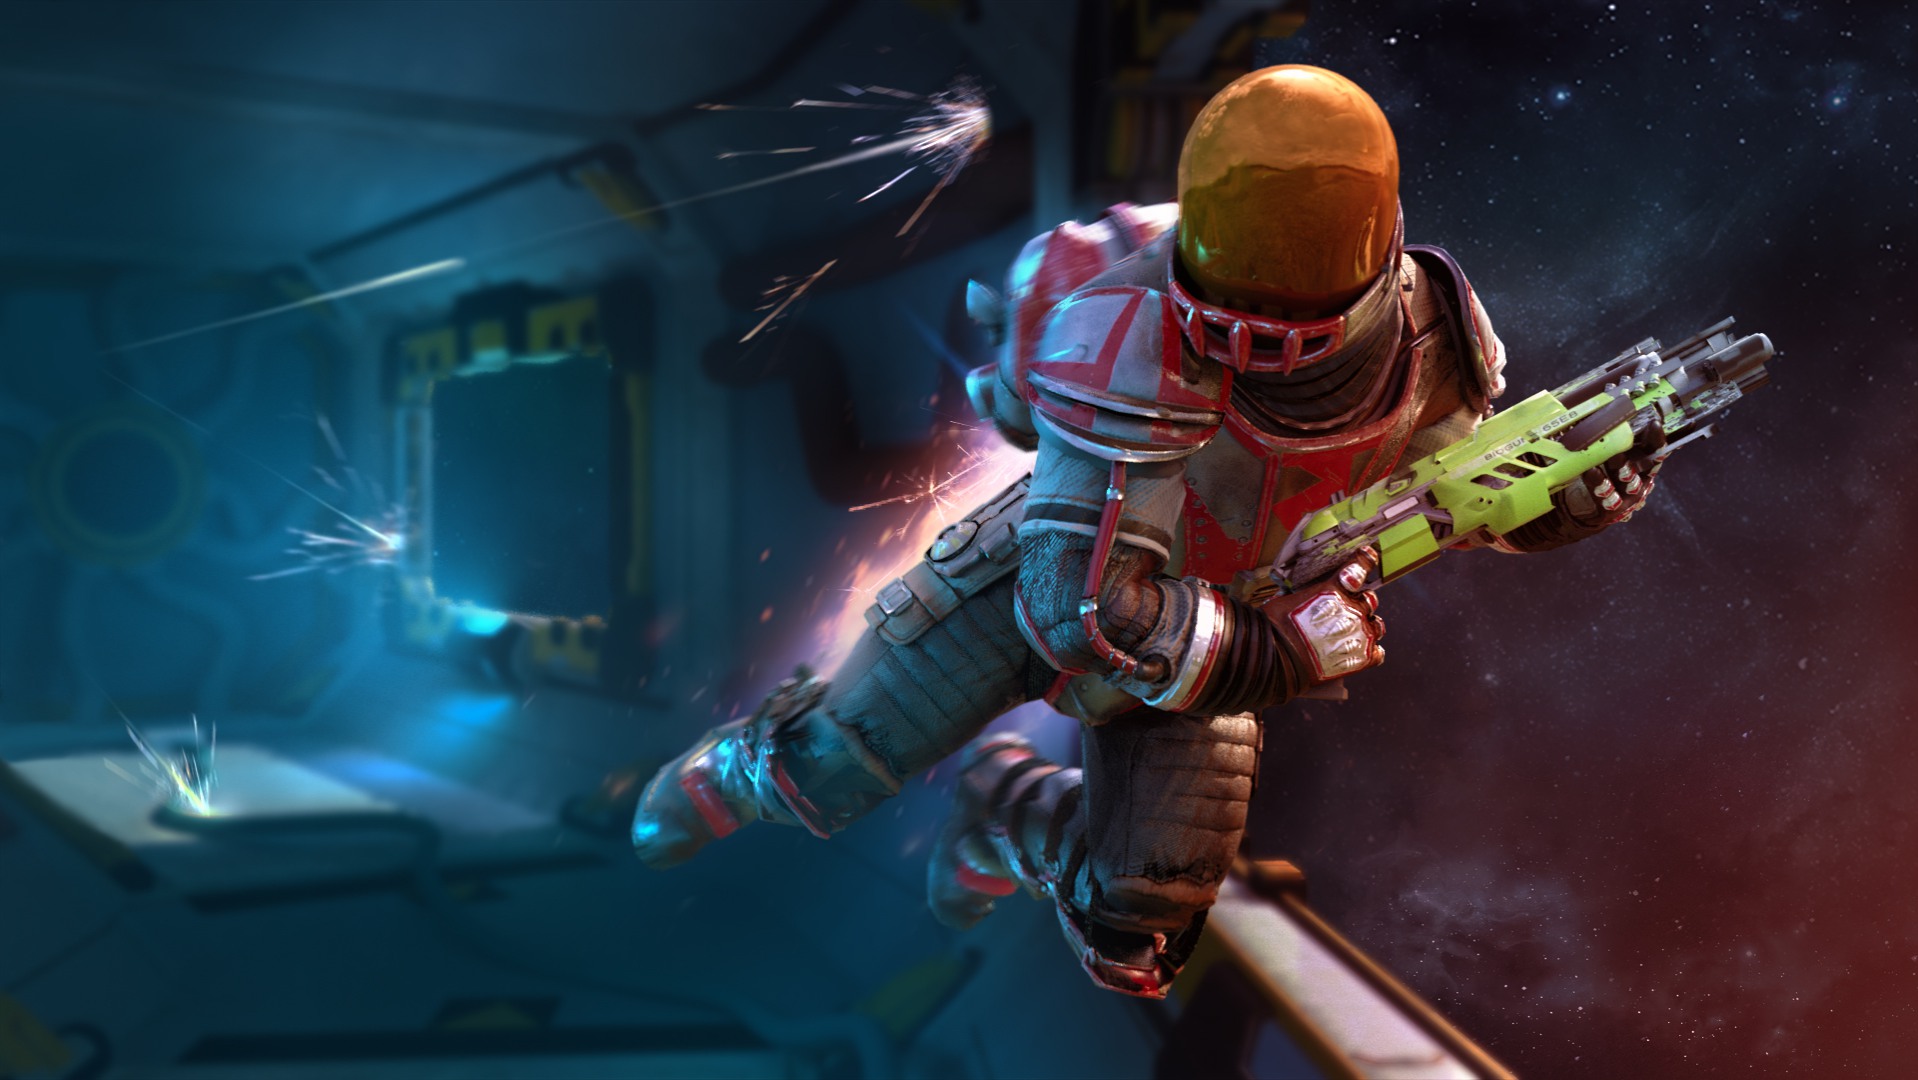 育碧微重力射击游戏《太空镖客》3月26日发售